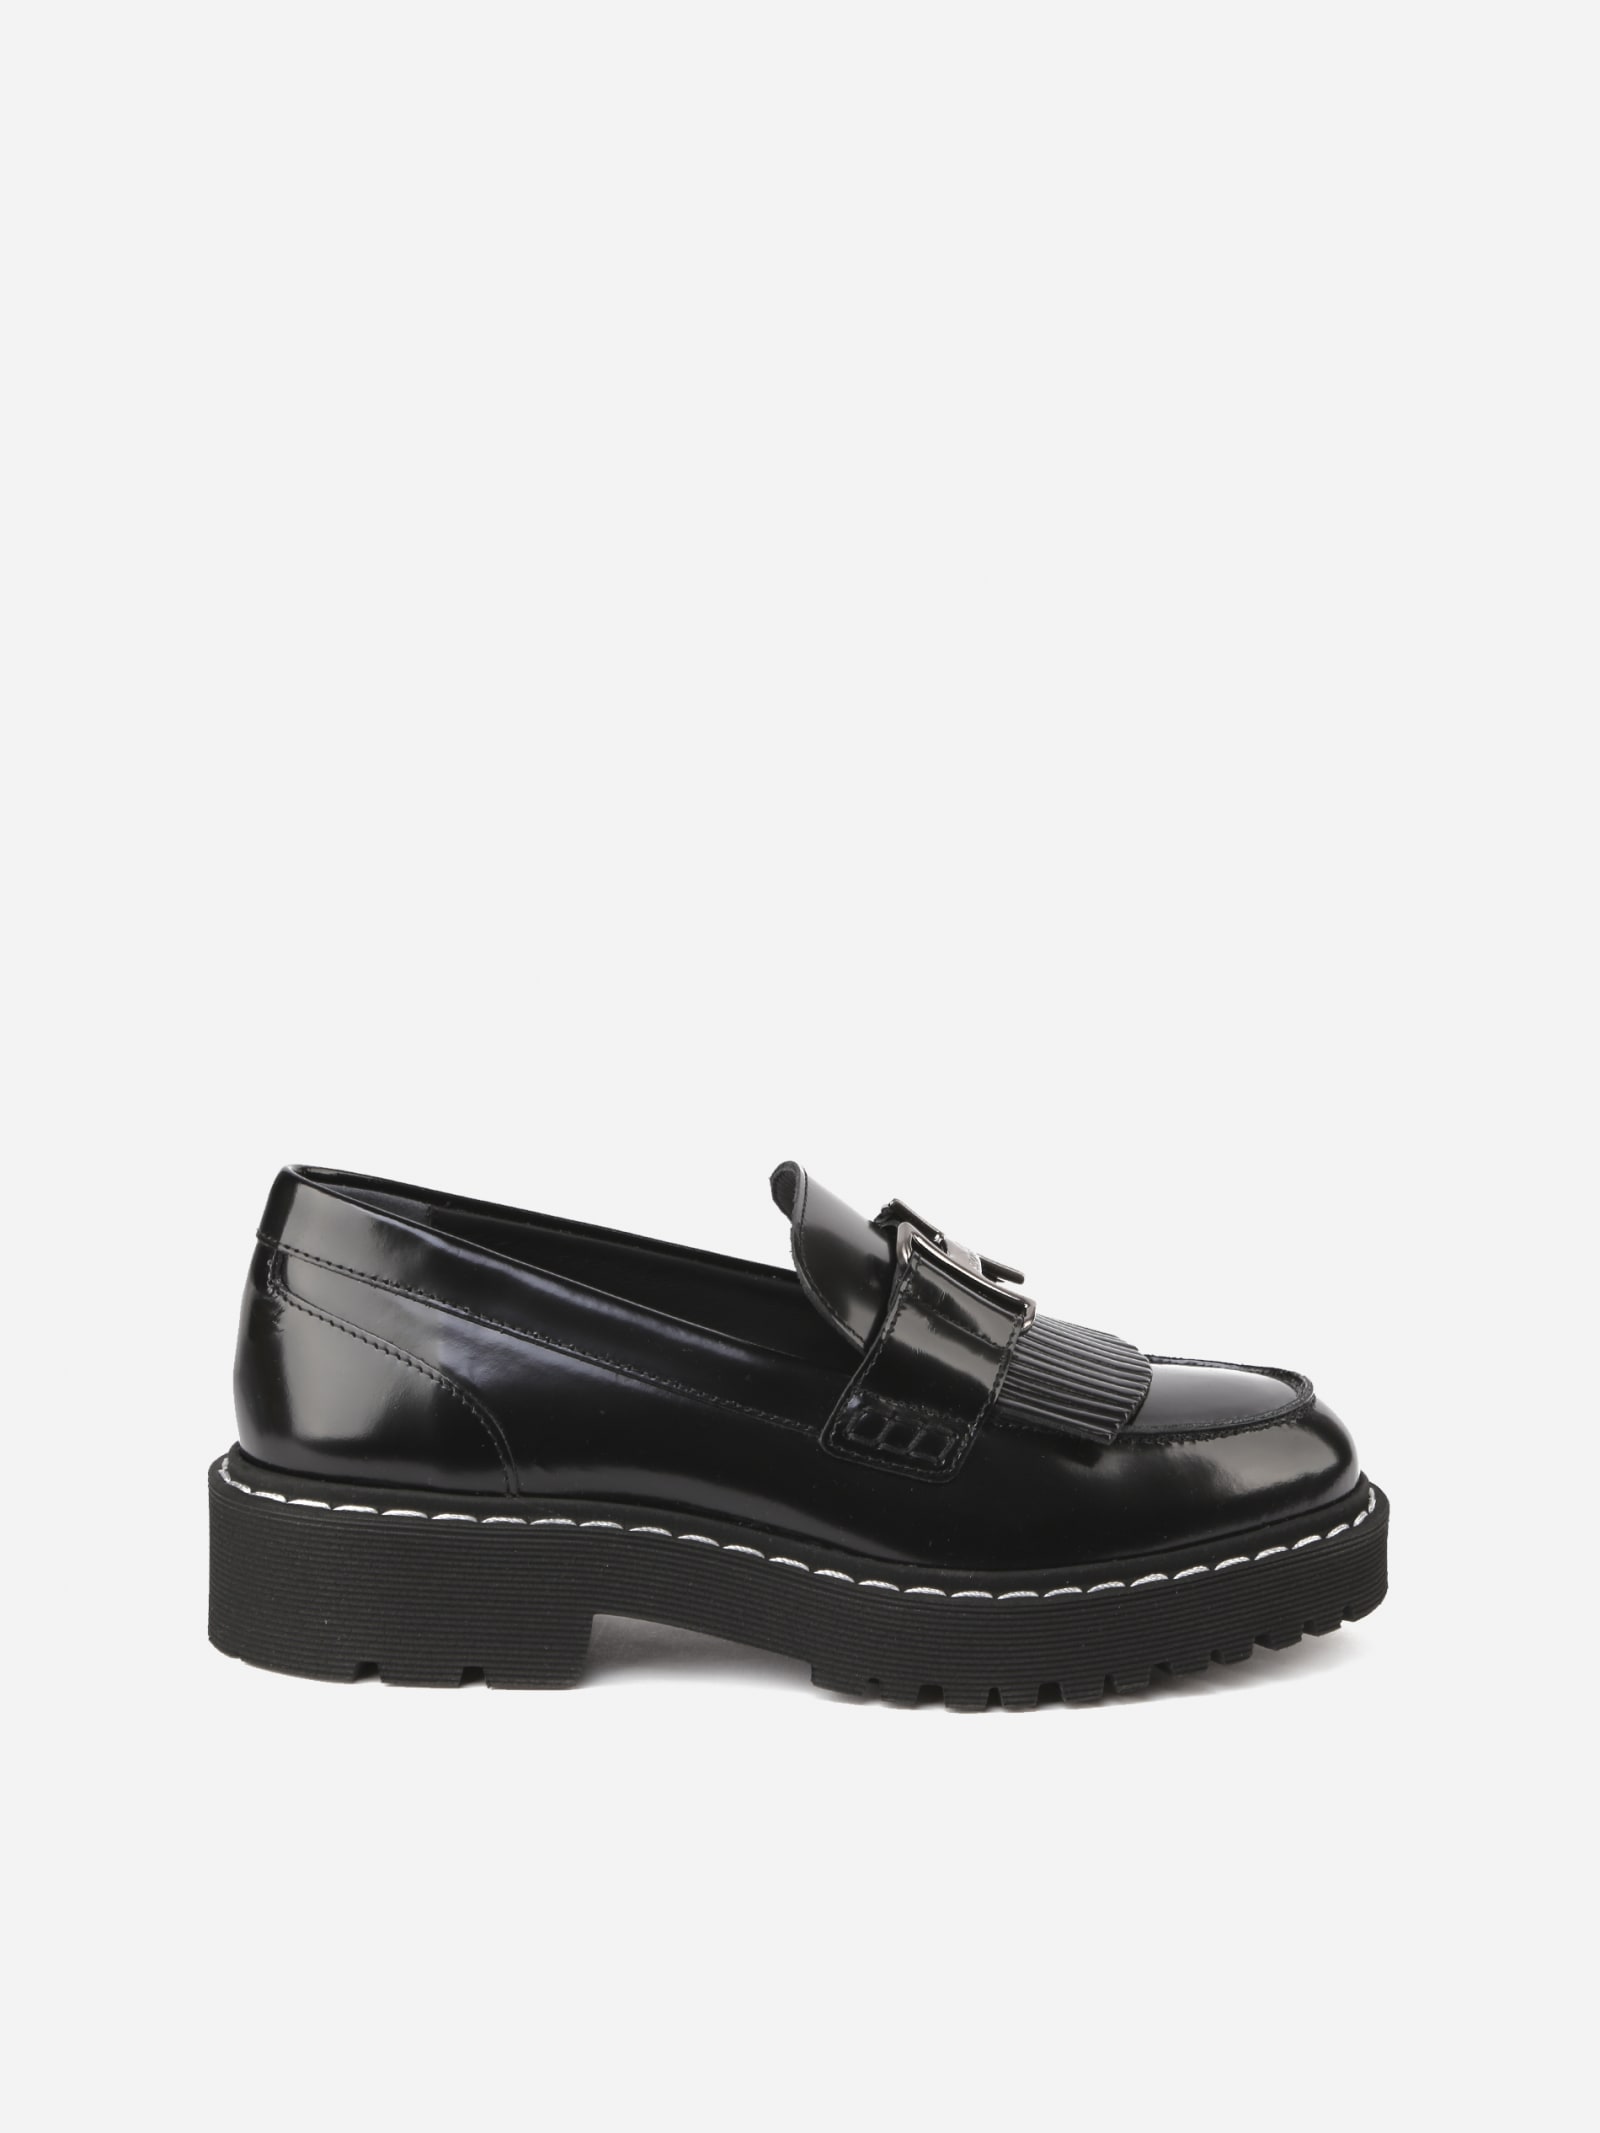 Hogan Black Patent Leather Loafer